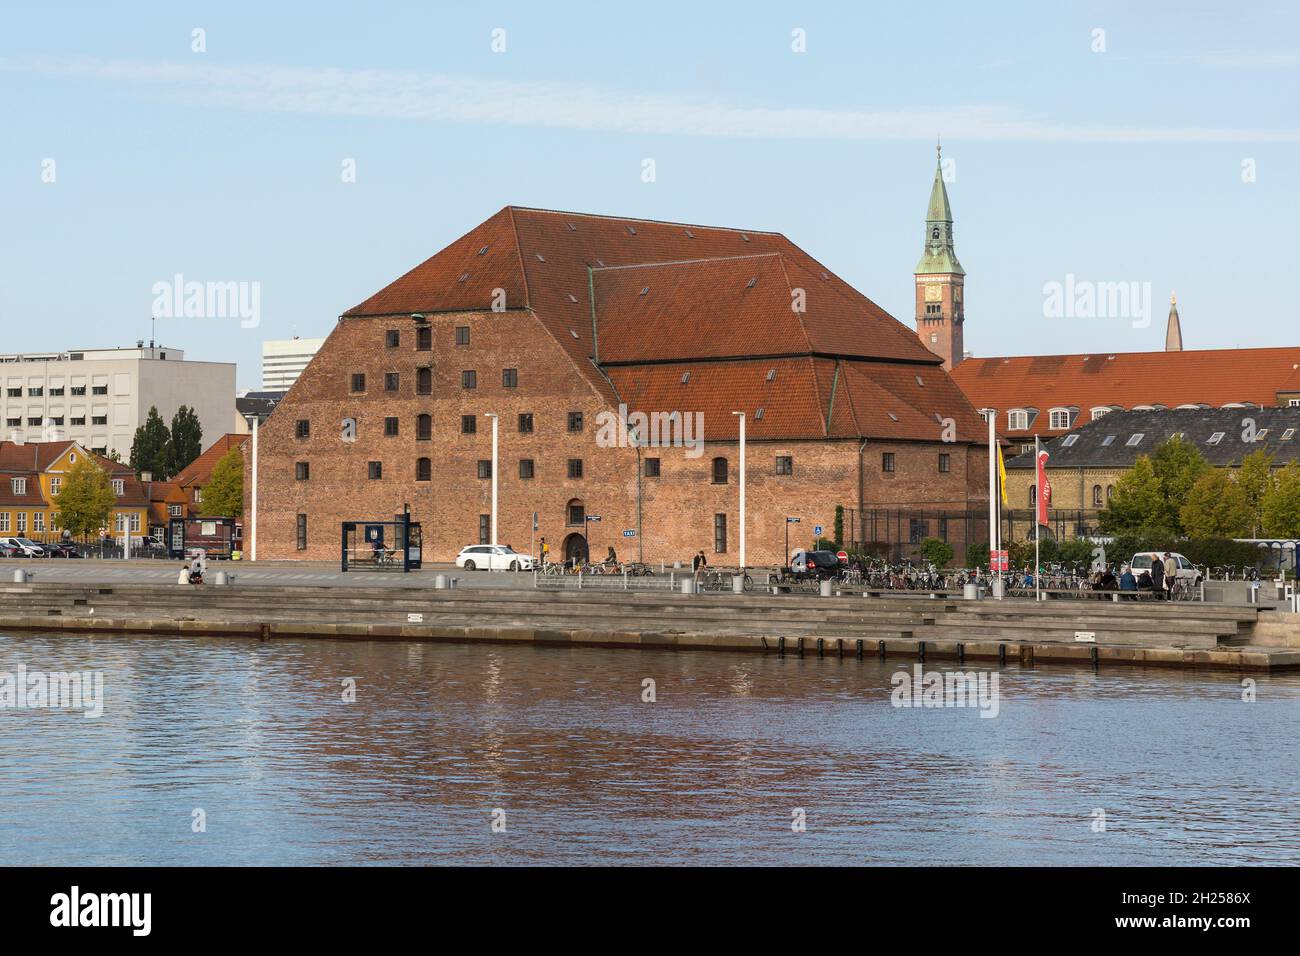 Kopenhagen, Dänemark – 22. September 2021: Die historische königliche Brauerei (Kongens Bryghus) wurde 1618 unter König Christian IV. Erbaut Stockfoto